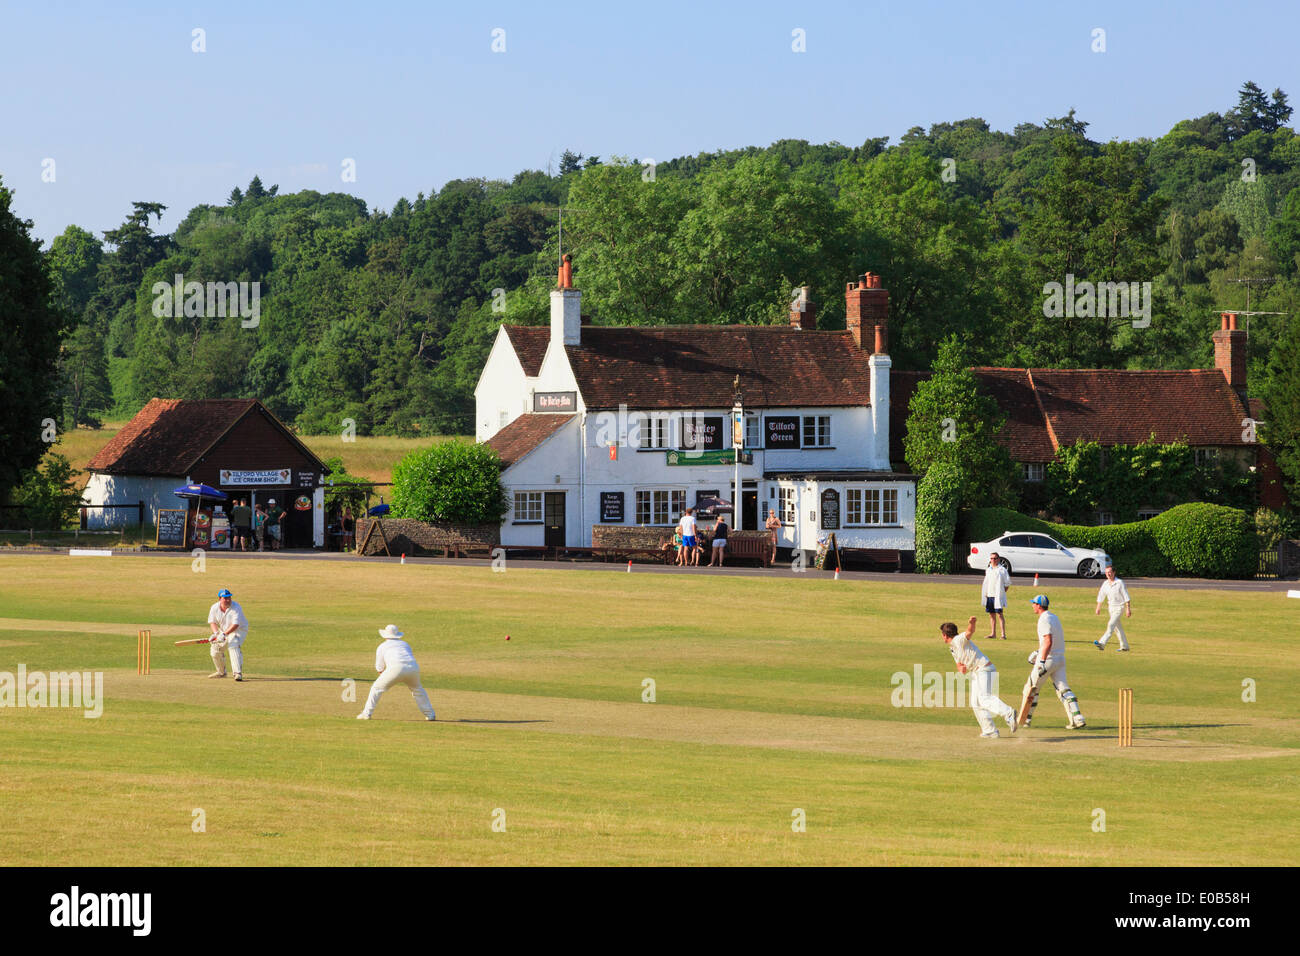 Country LIFE squadre locali che giocano una partita di cricket su un villaggio verde di fronte al pub Barley Mow in una serata estiva. Tilford Surrey Inghilterra Regno Unito Foto Stock